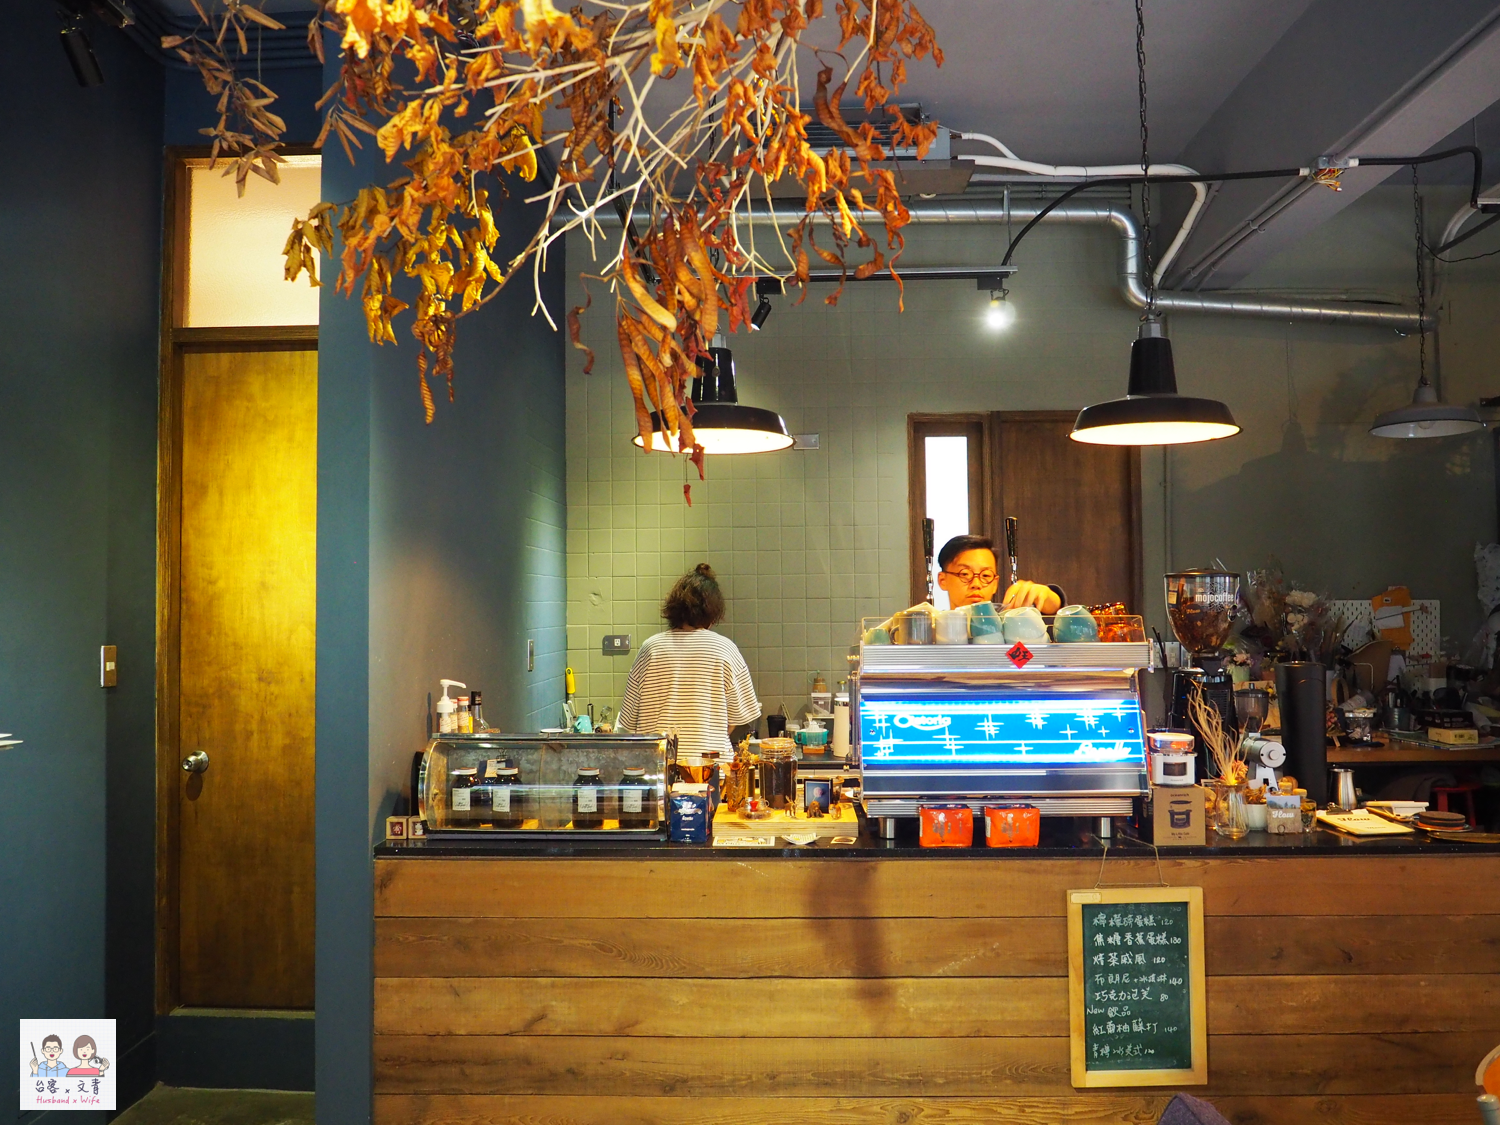 【基隆⋈咖啡】（已搬新址）遠離城市的喧鬧  「Flow cafe」在花草圍繞的世界覓得清幽 @台客和文青的宜居生活𖤣𖤥𖠿𖤥𖤣